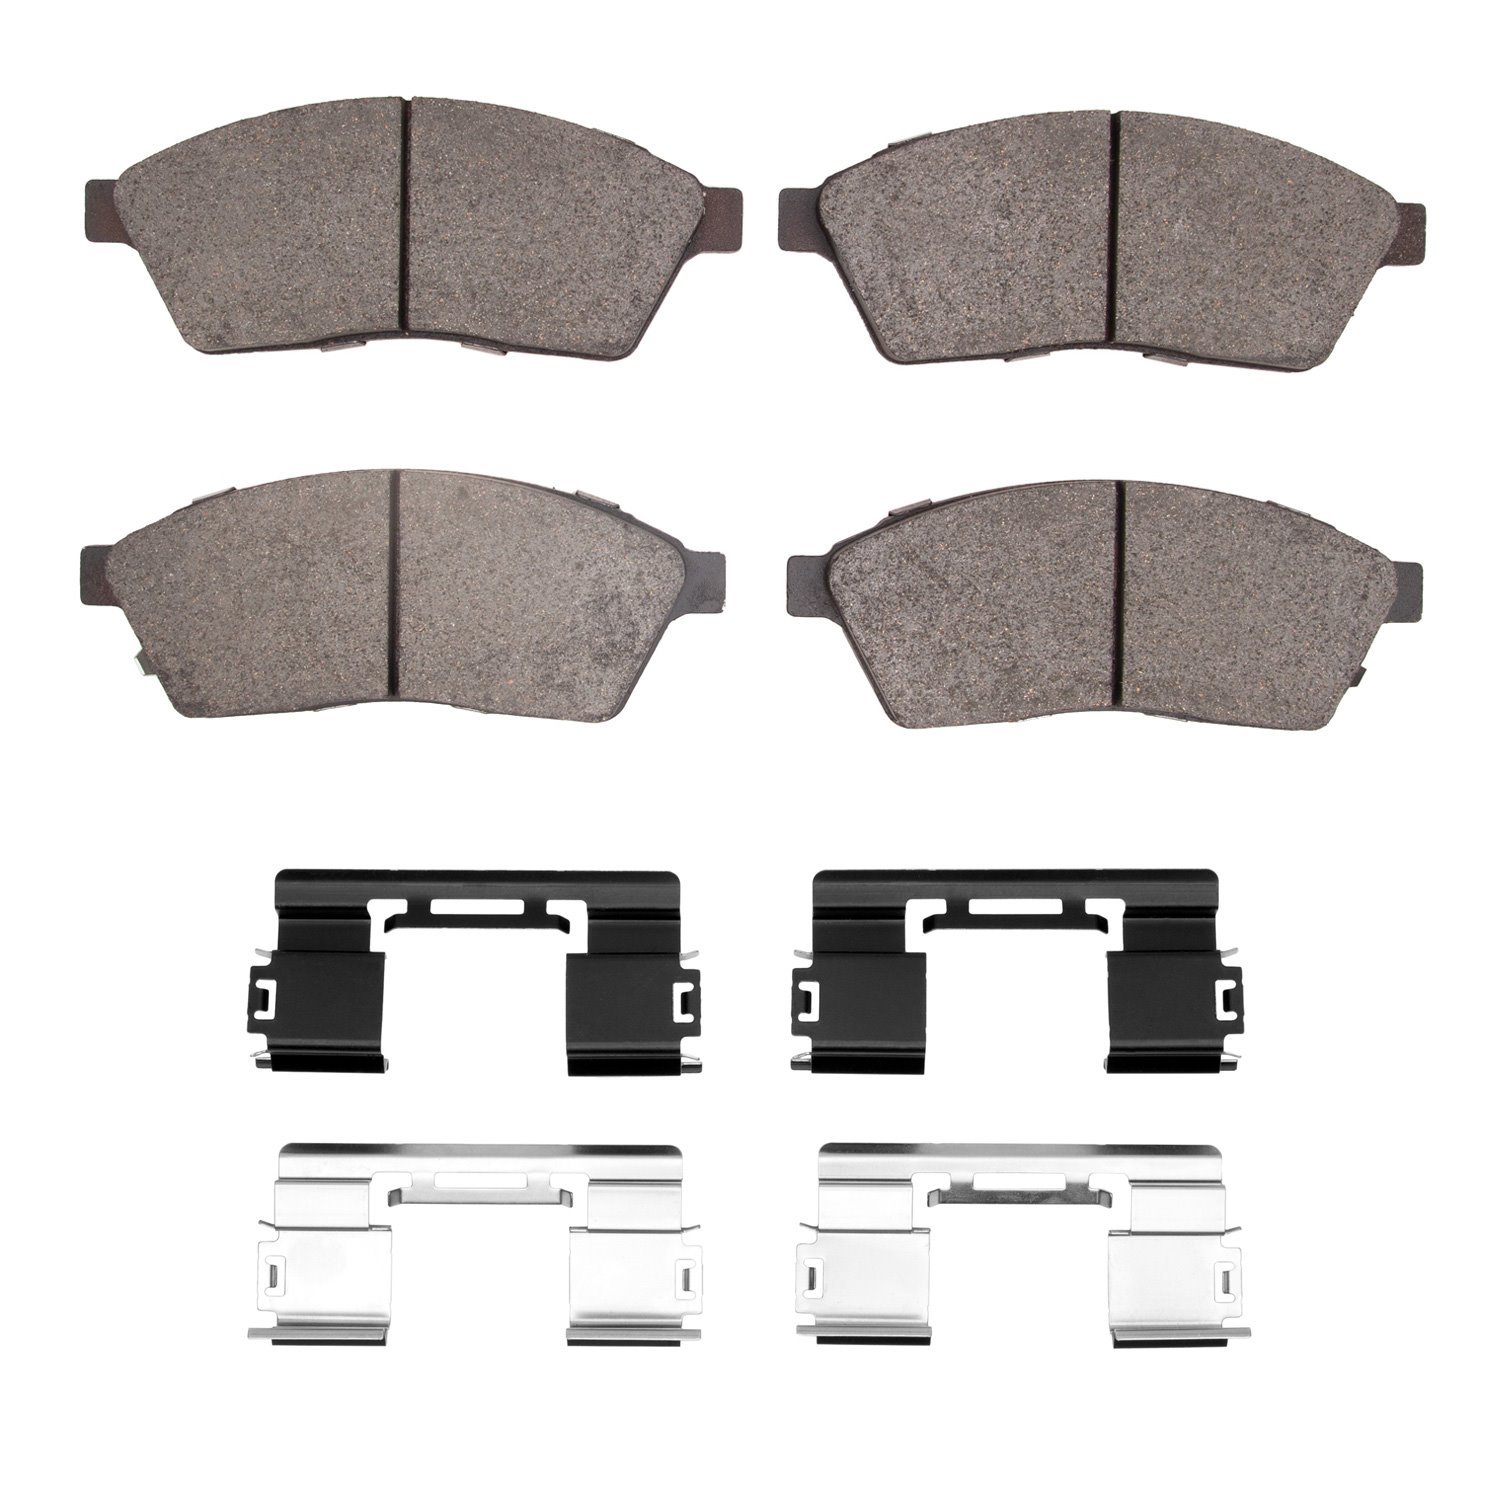 1600-1422-01 5000 Euro Ceramic Brake Pads & Hardware Kit, 2010-2016 GM, Position: Front